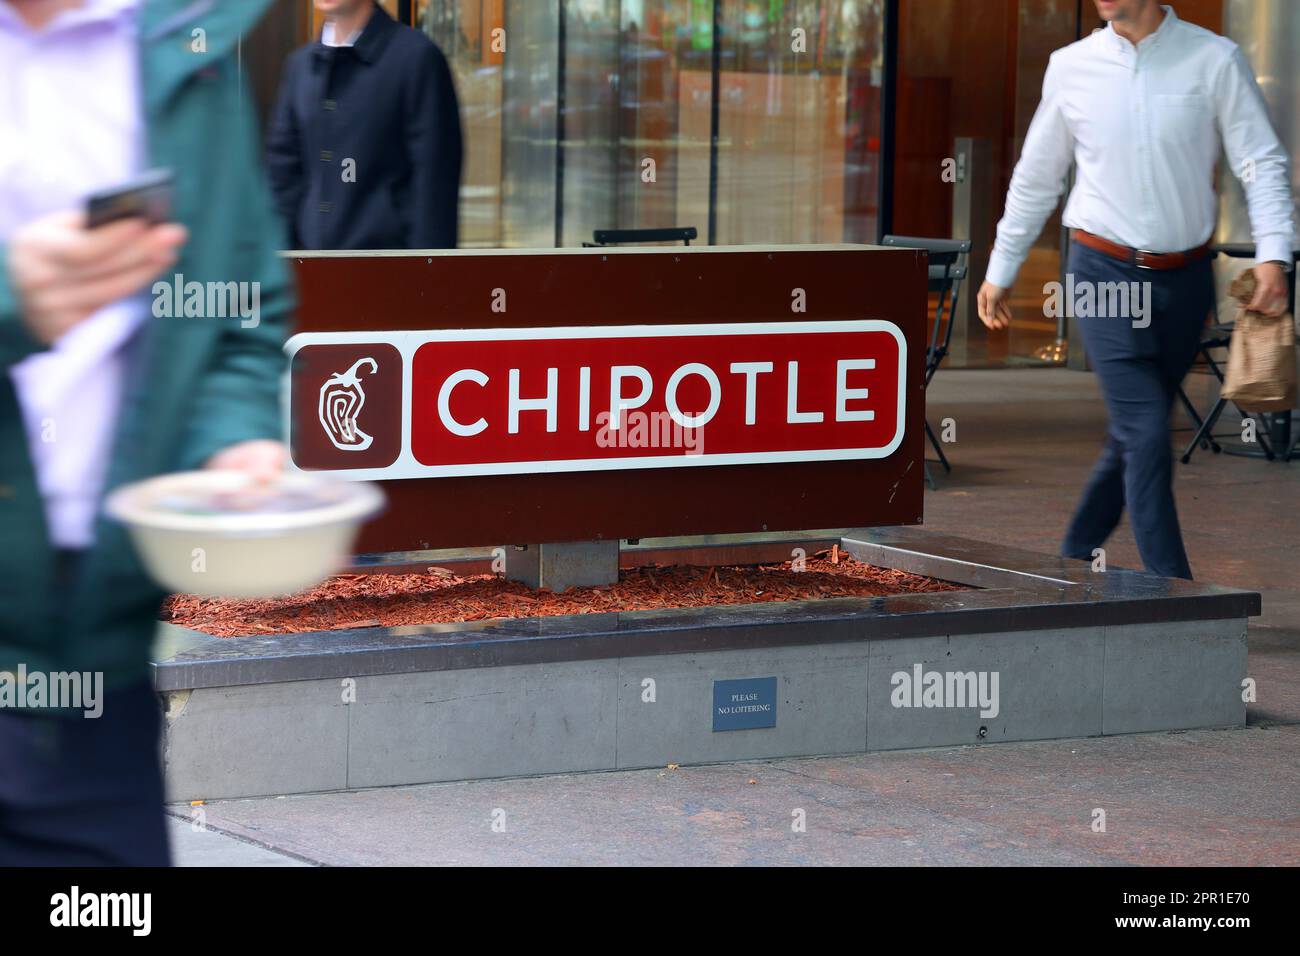 Büroangestellte mit Mittagessen zum Mitnehmen gehen an einem Chipotle in Midtown Manhattan, New York vorbei. Chipotle ist ein schnelles, zwangloses mexikanisches Restaurant Stockfoto